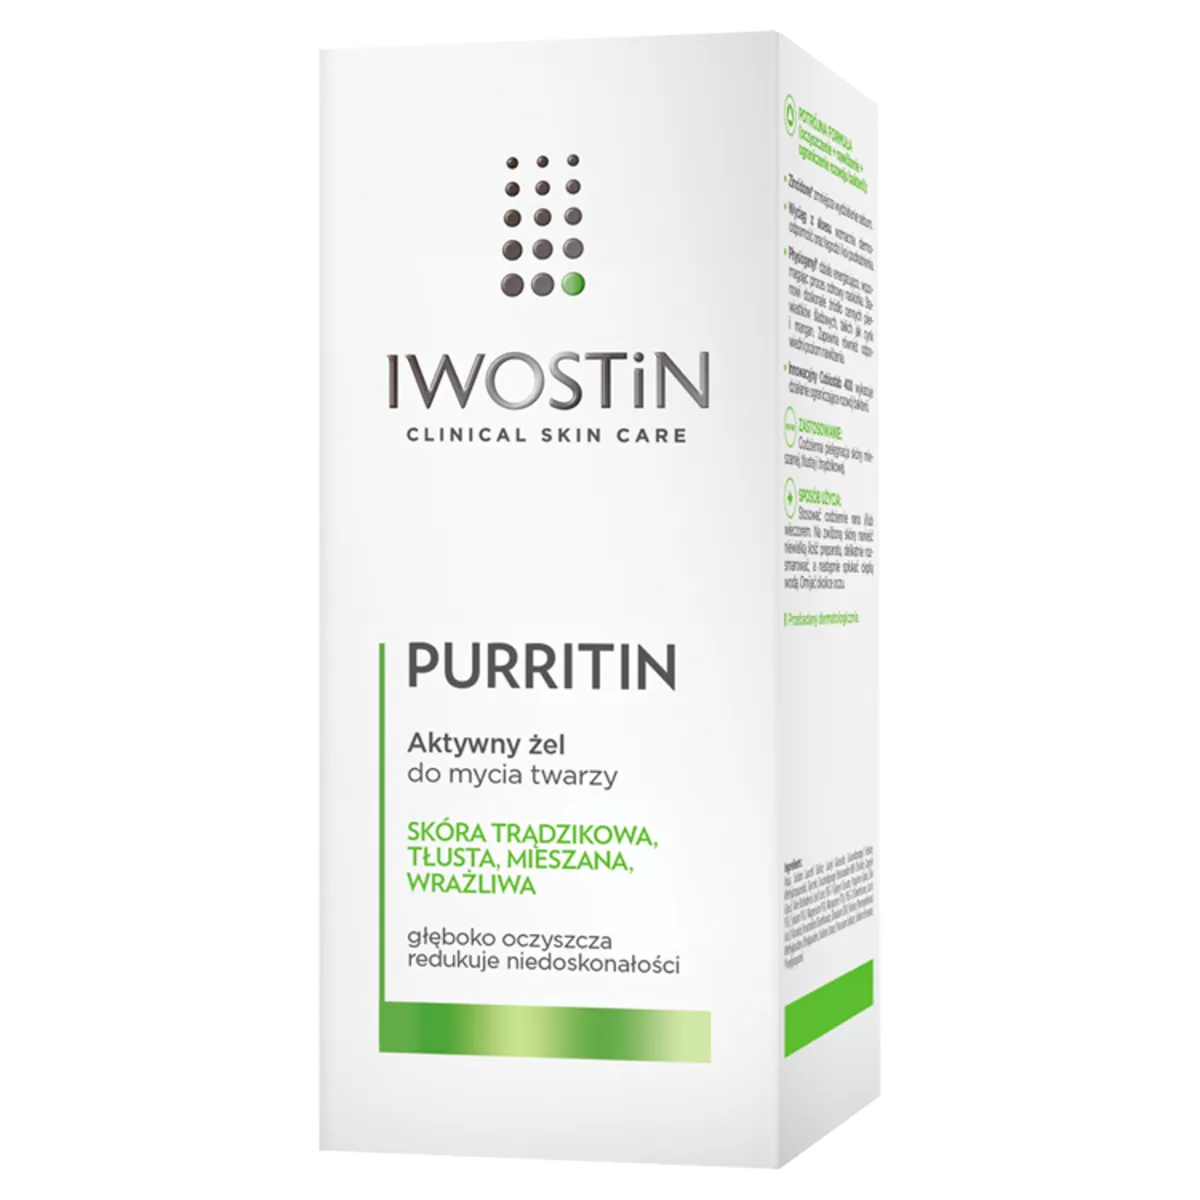 Iwostin Purritin, aktywny żel do mycia twarzy, 150 ml 